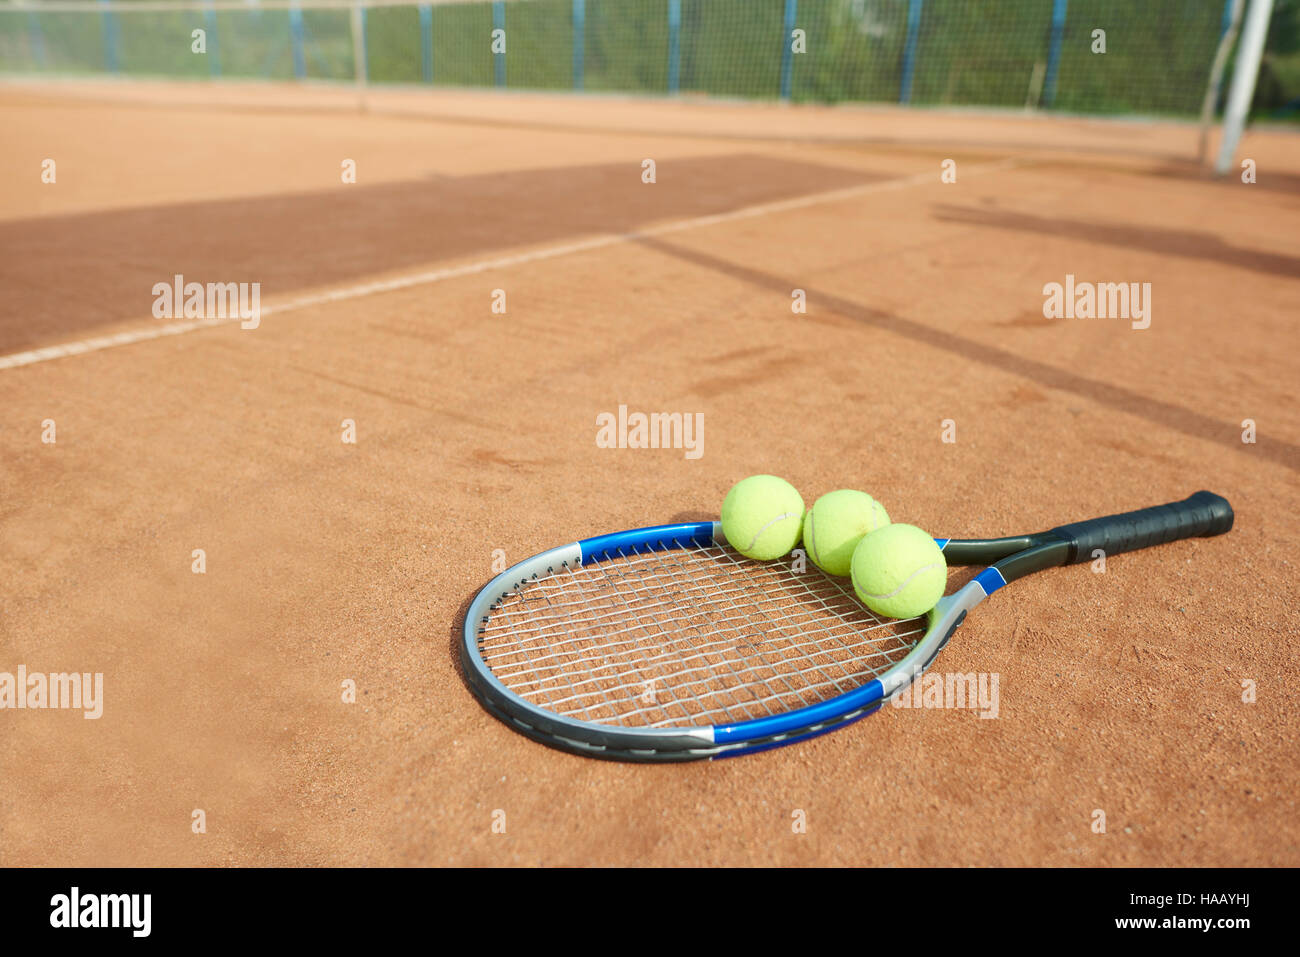 Les balles de tennis et tennis racket sur l'avant-plan Banque D'Images